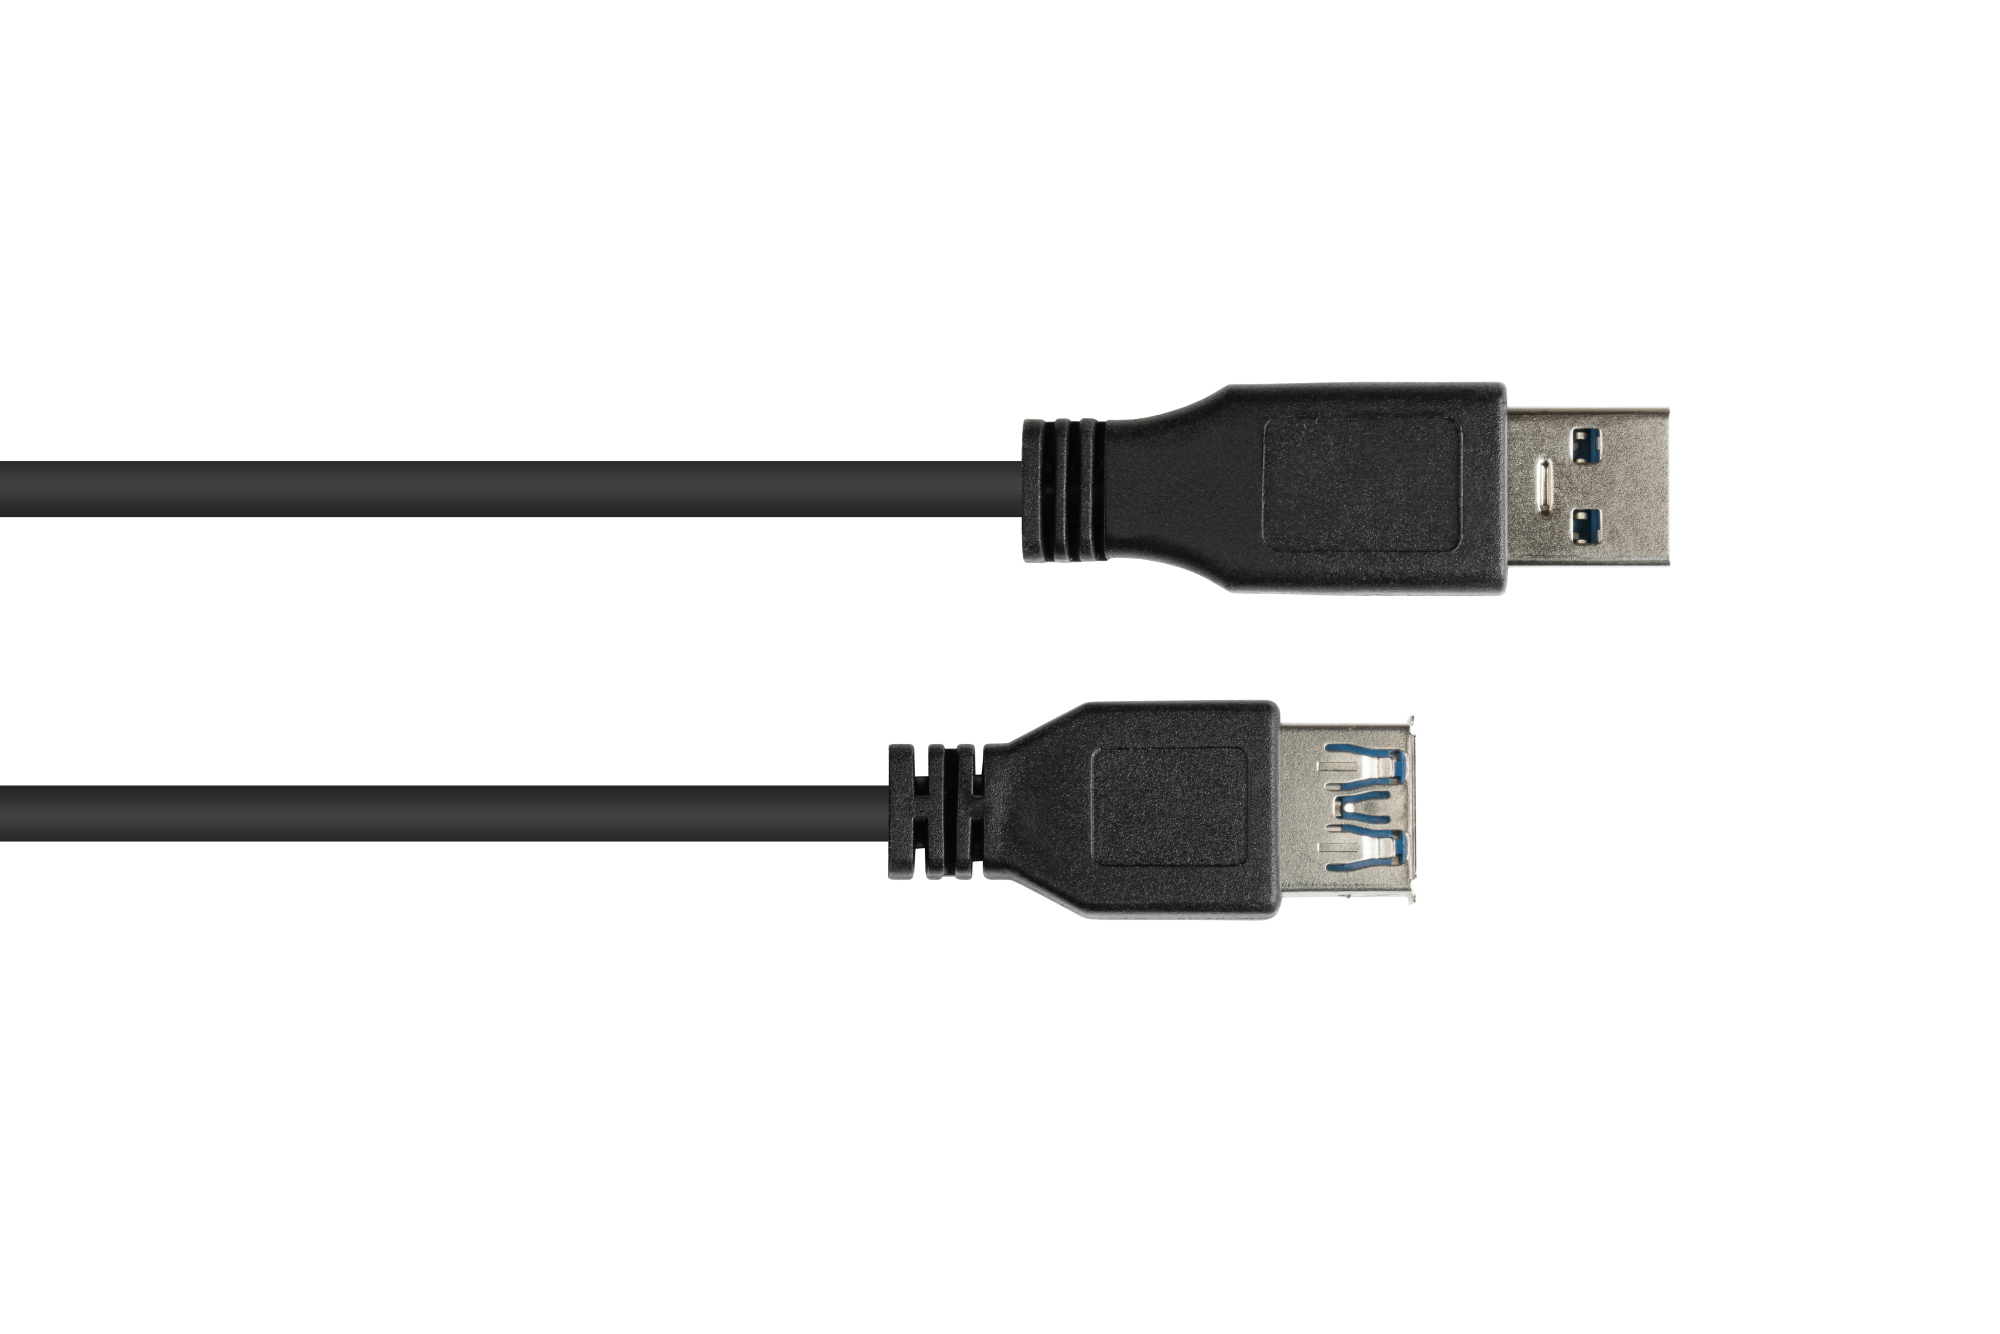 Verlängerungskabel USB 3.0 Stecker A an Buchse A, schwarz, 1,8m, Good Connections®